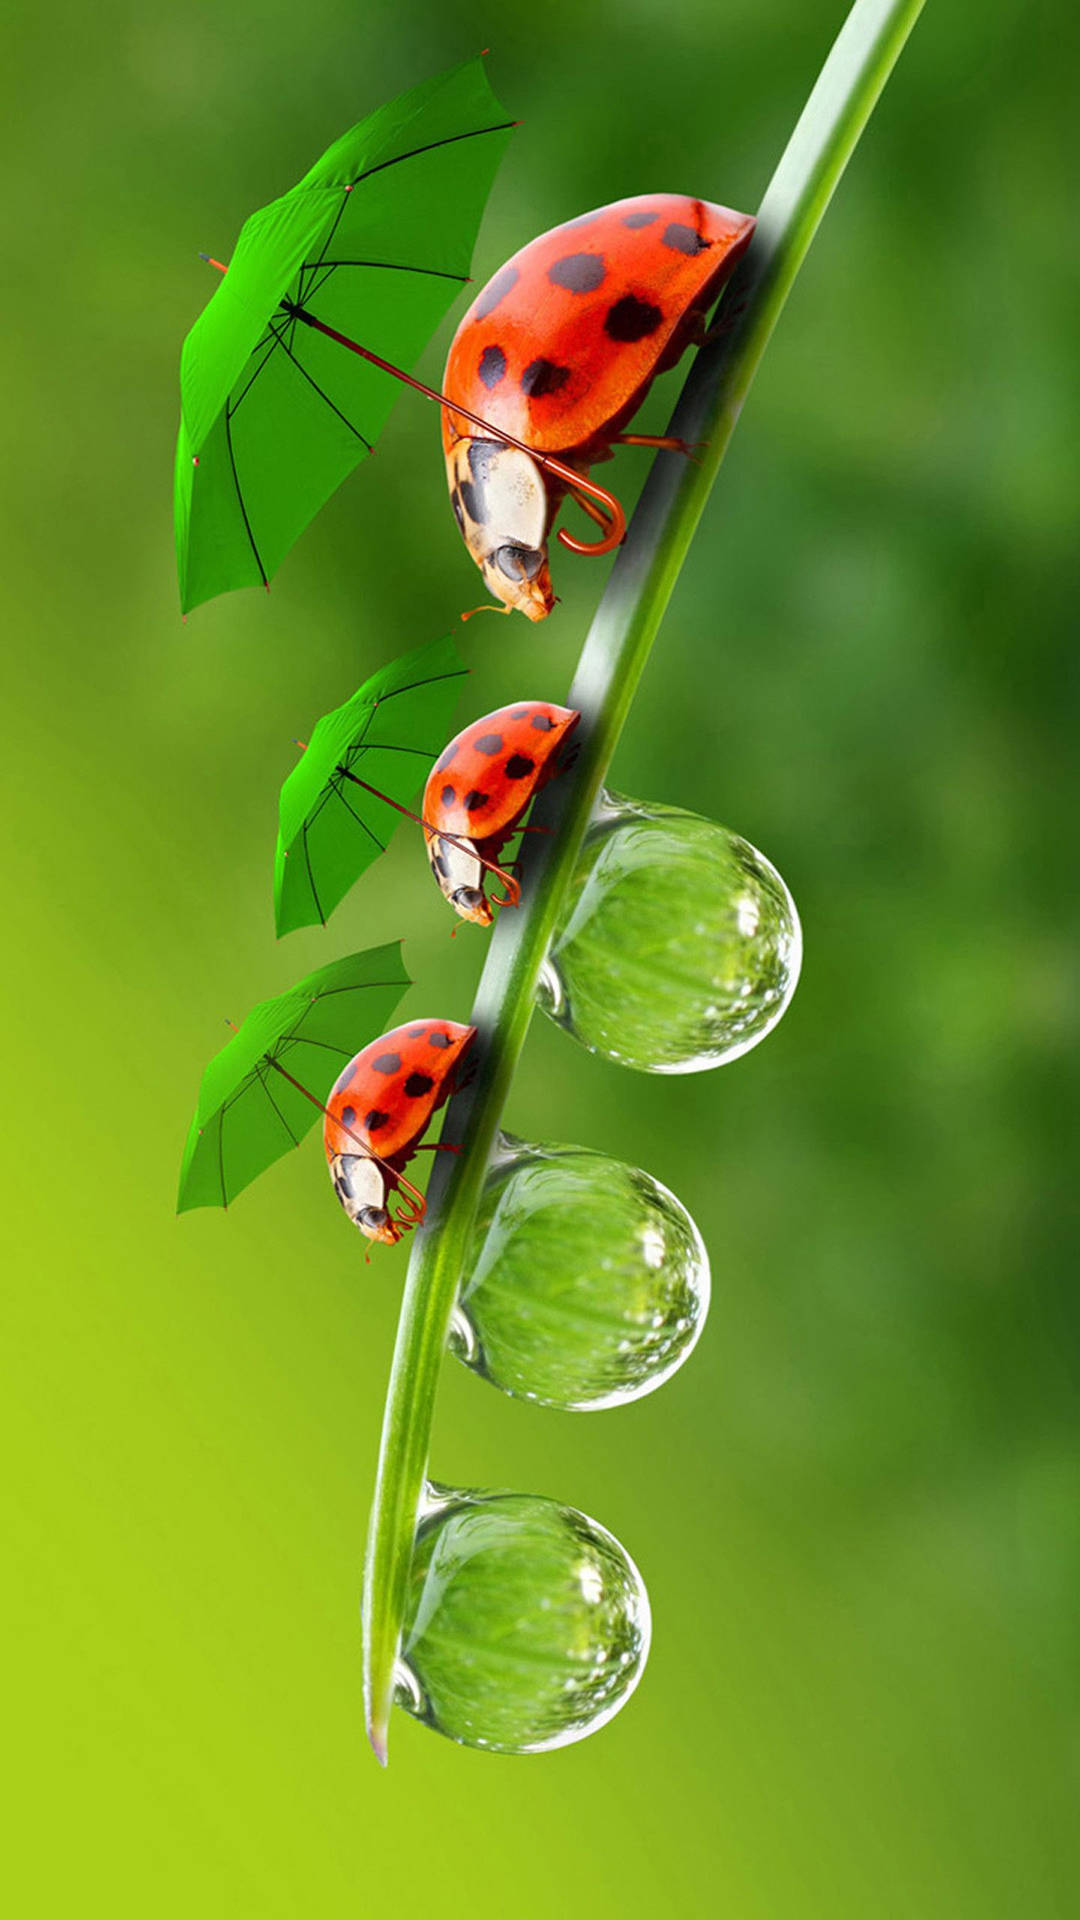 Ladybug Beetles With Green Umbrellas